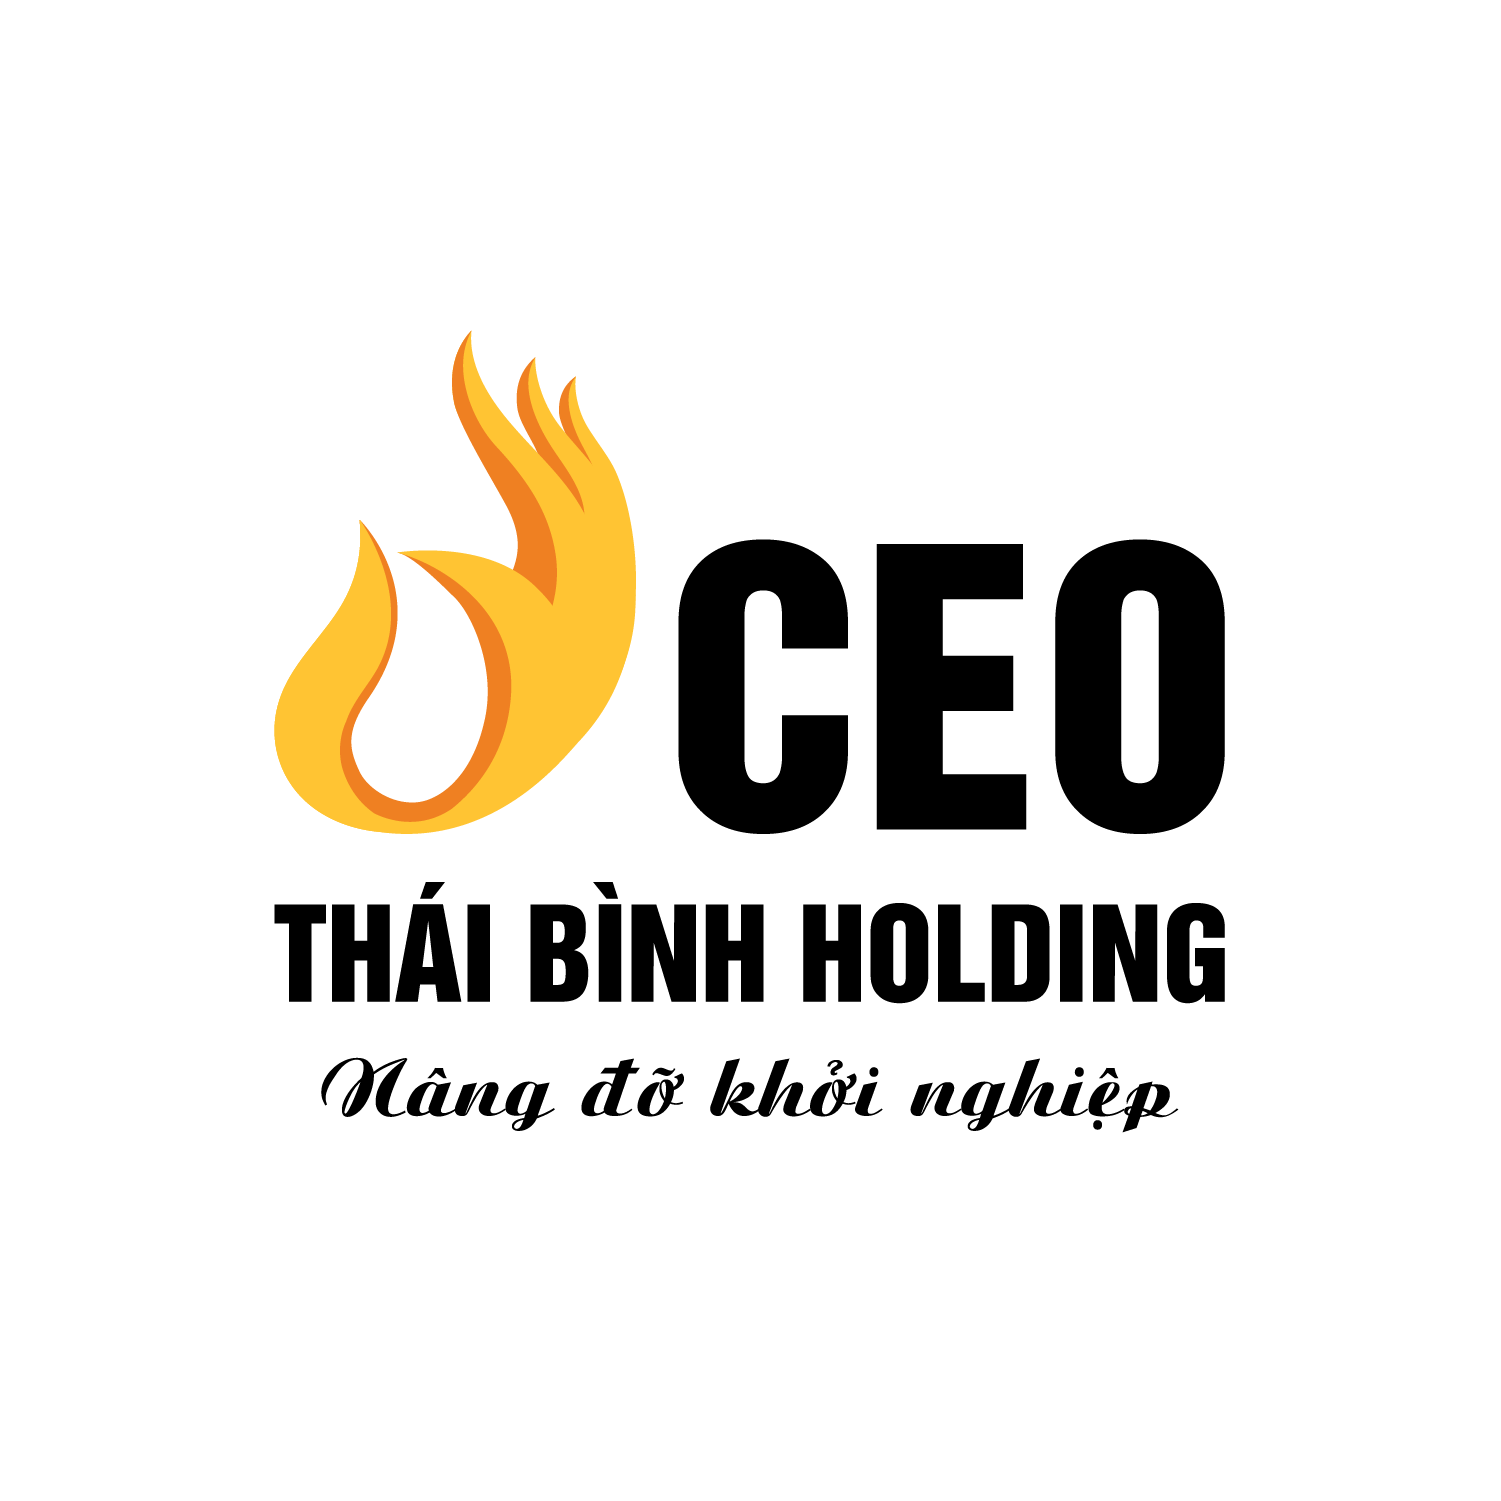 Công ty Cổ phần CEO Thái Bình Holding tuyển dụng Nhân Viên Viết Bài (Content Marketing) lương thưởng hấp dẫn, chế độ đãi ngộ cao